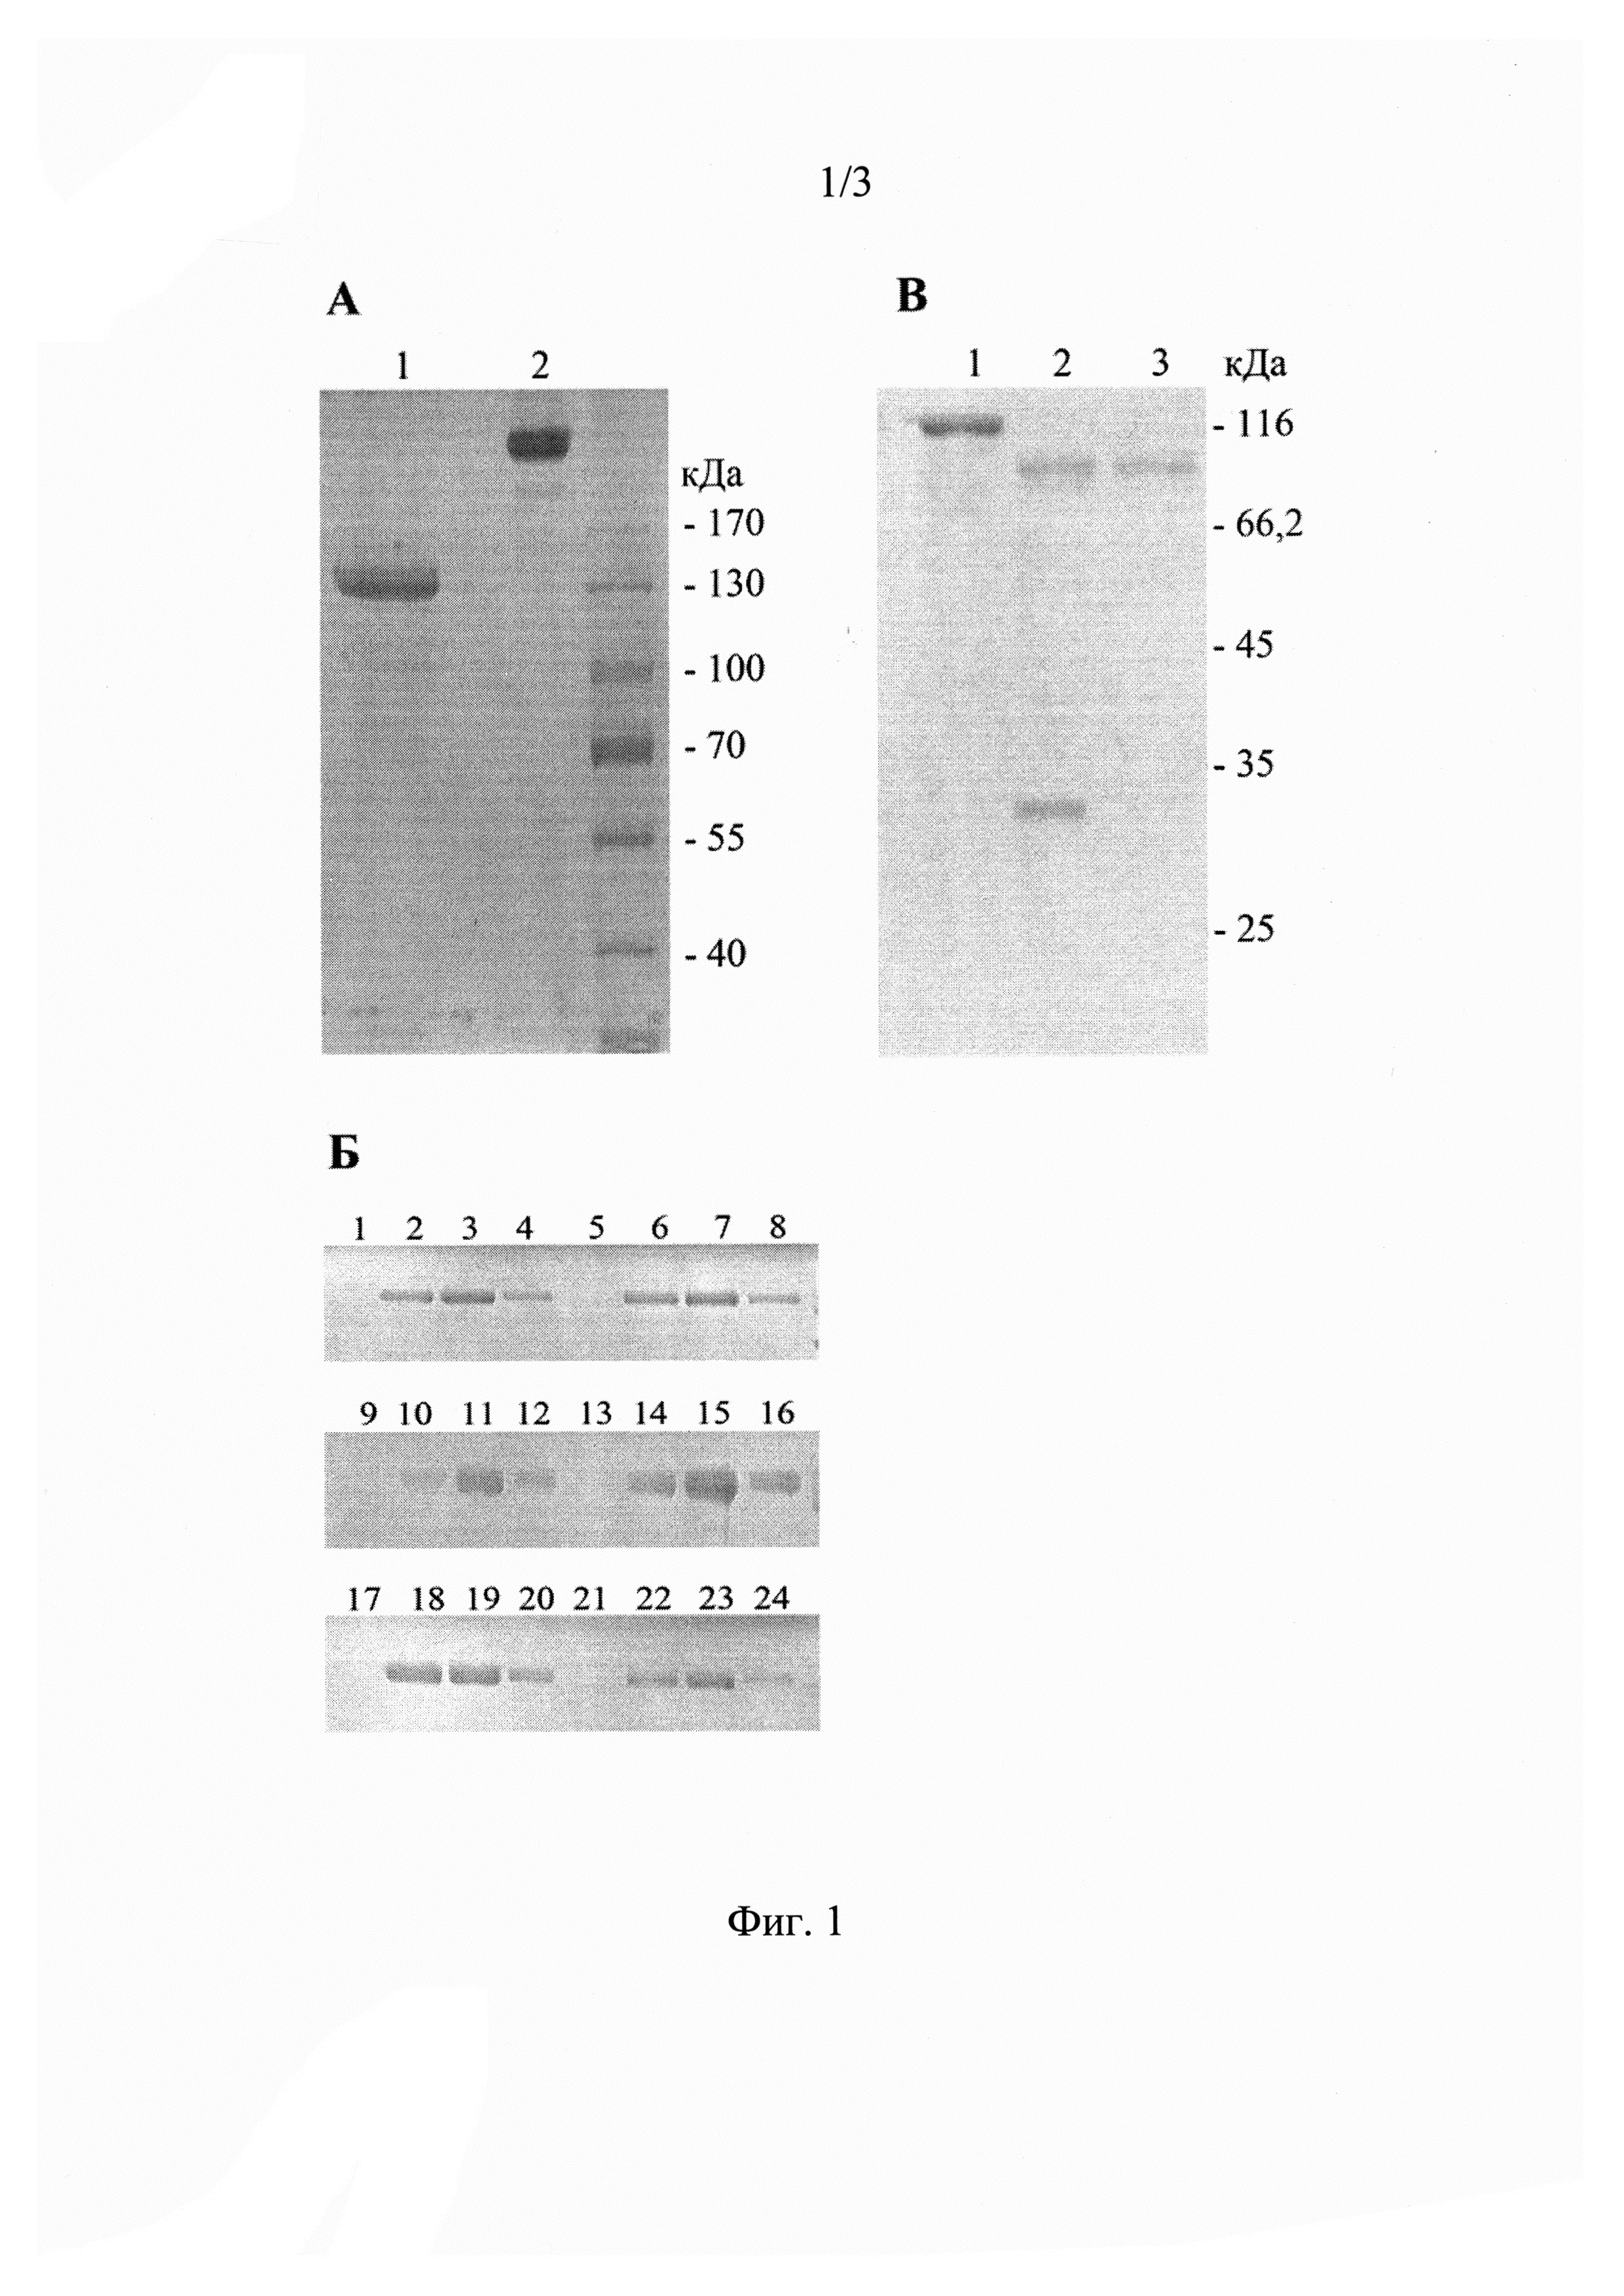 Антитело МАТ40, которое связывается с доменом I экстраклеточной части рецептора эпидермального фактора роста HER2/CD340, и его применение для лечения рака